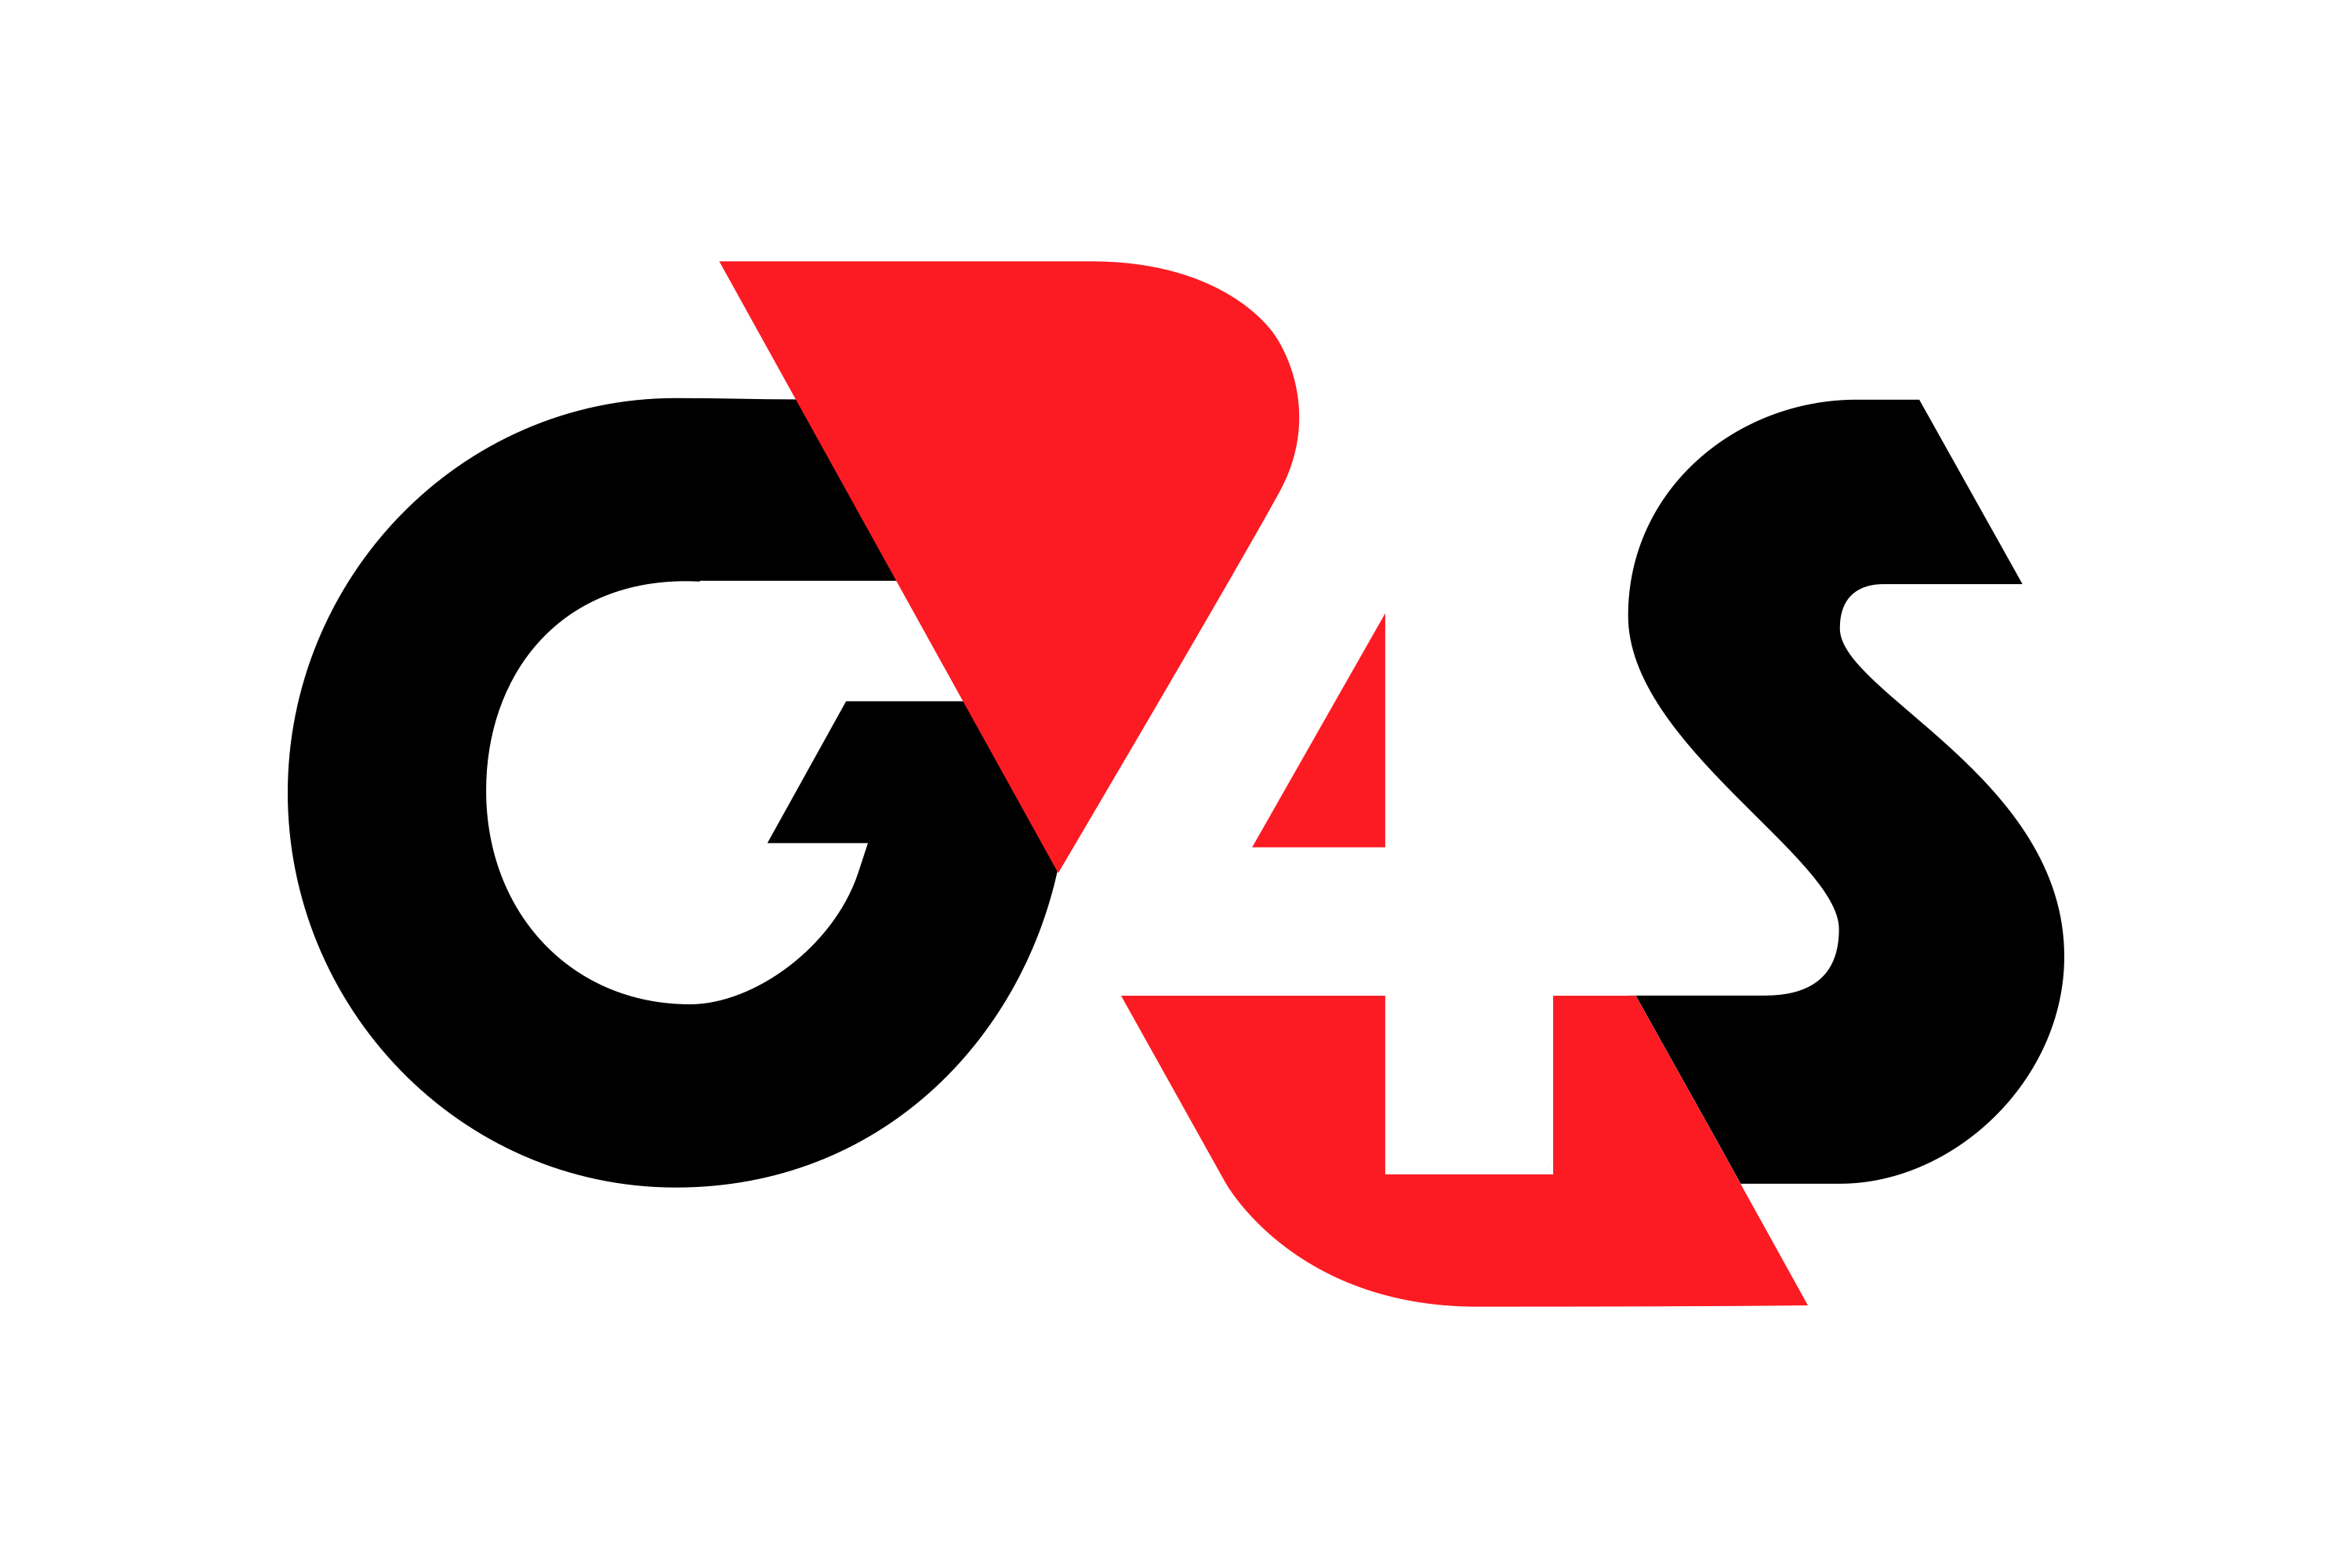 G4S Logo